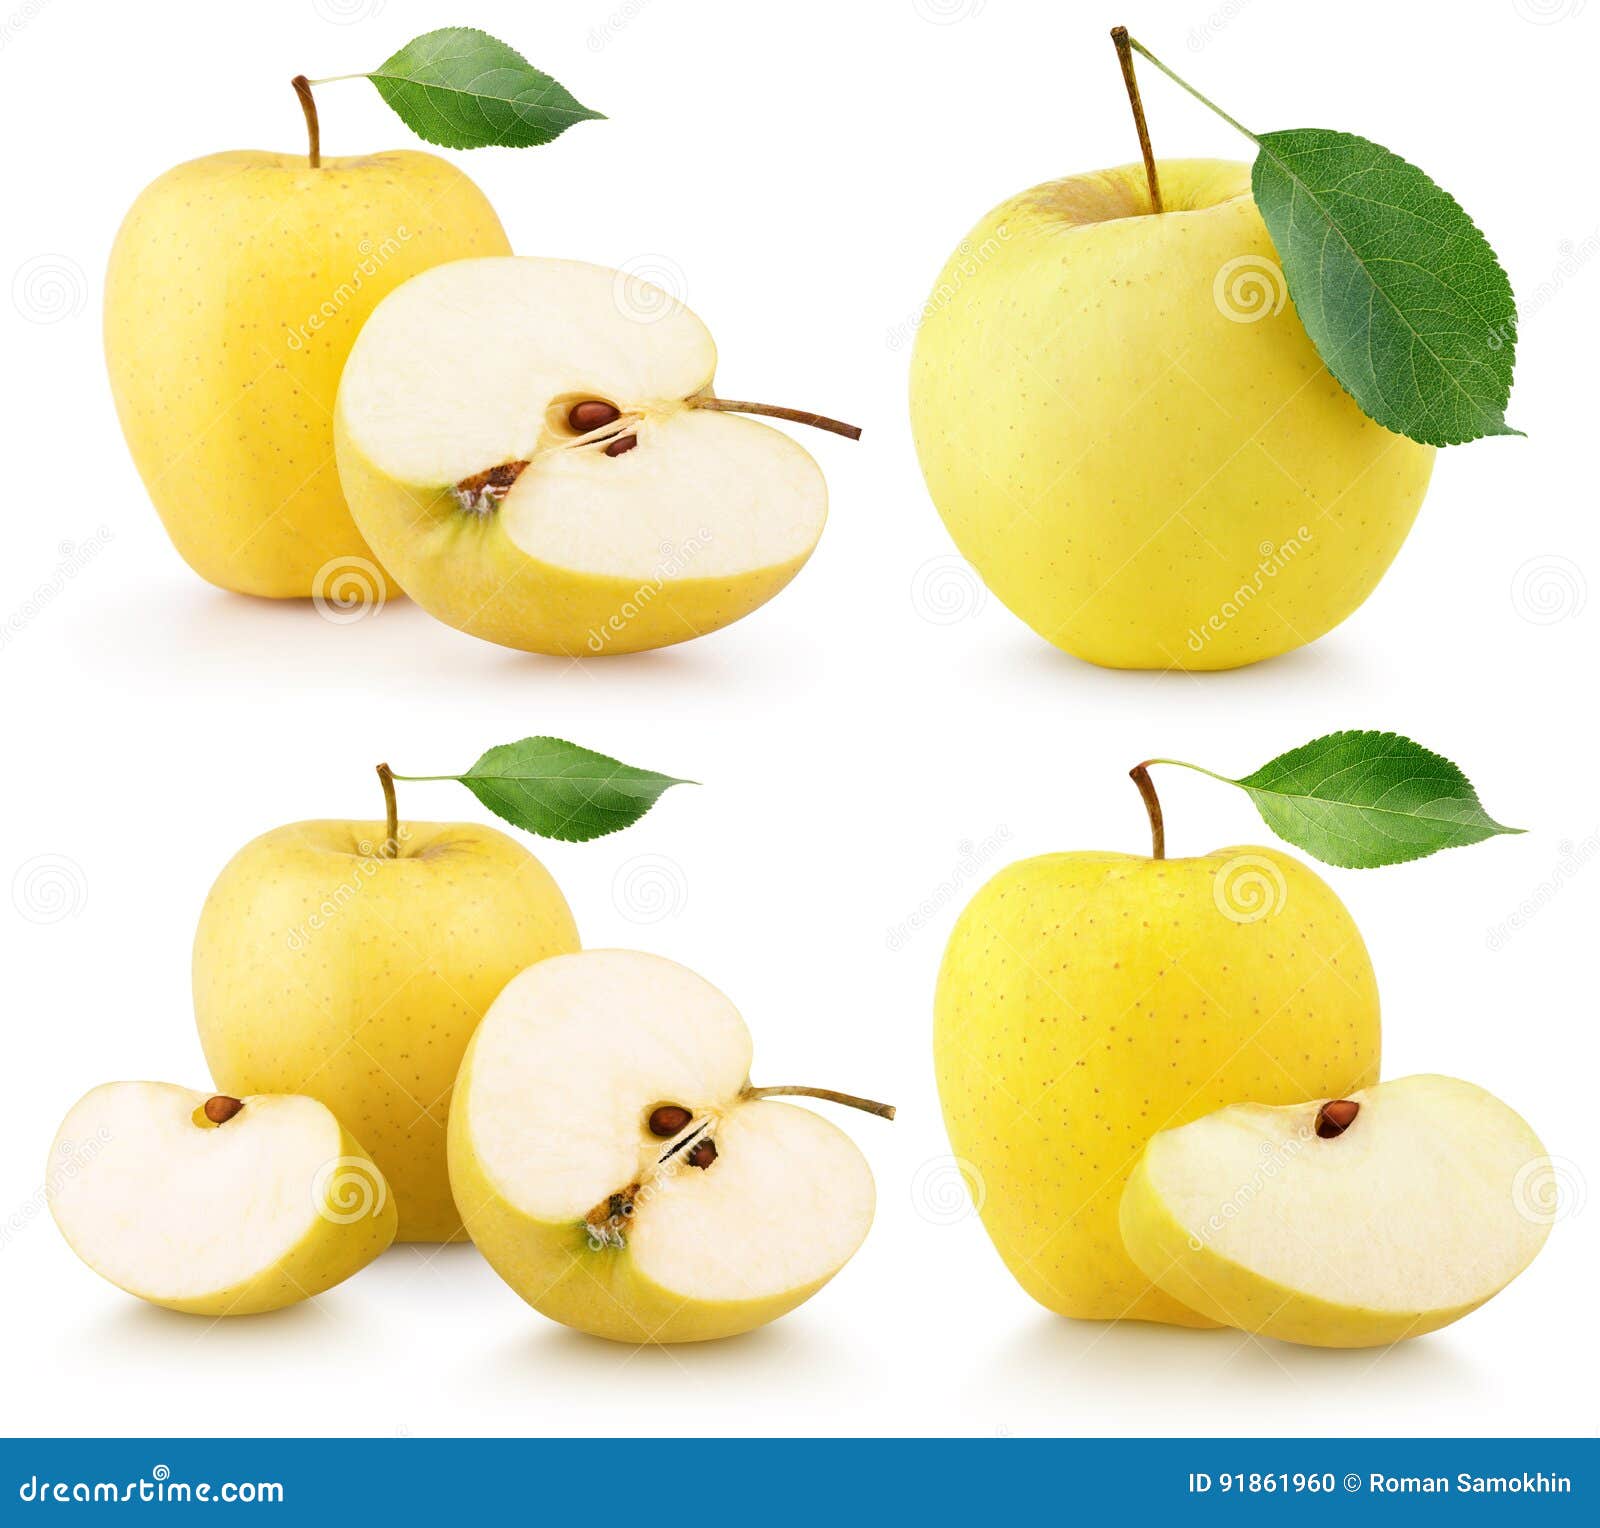 Яблоки желтого цвета для детей на белом фоне